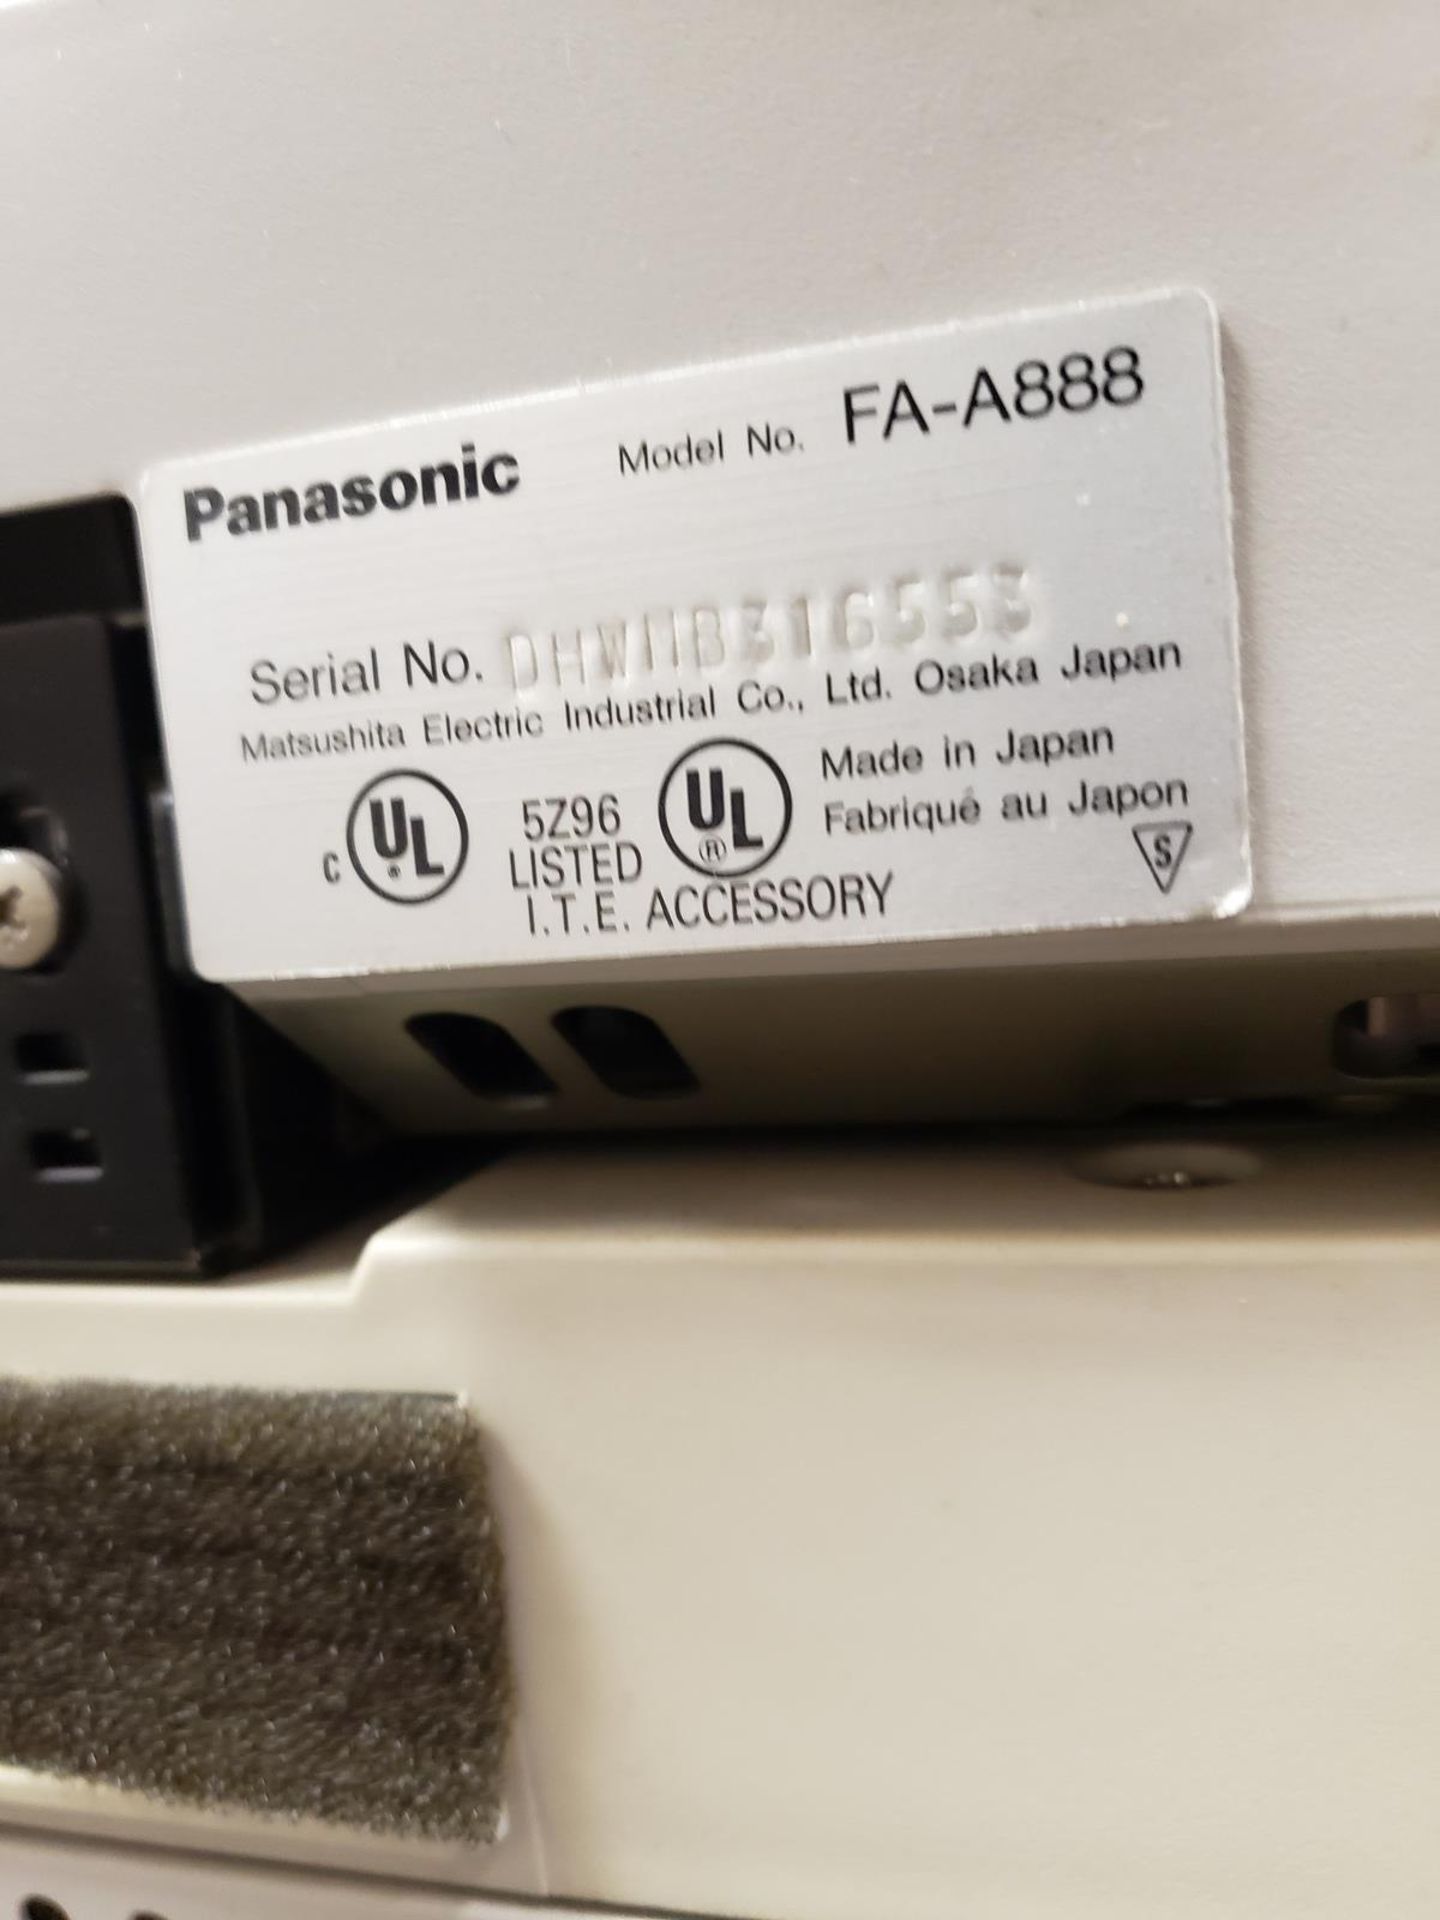 Panasonic Multi-Function Printer, M# FA-A888, S/N DHWIIB316553 | Rig Fee $100 - Image 2 of 4